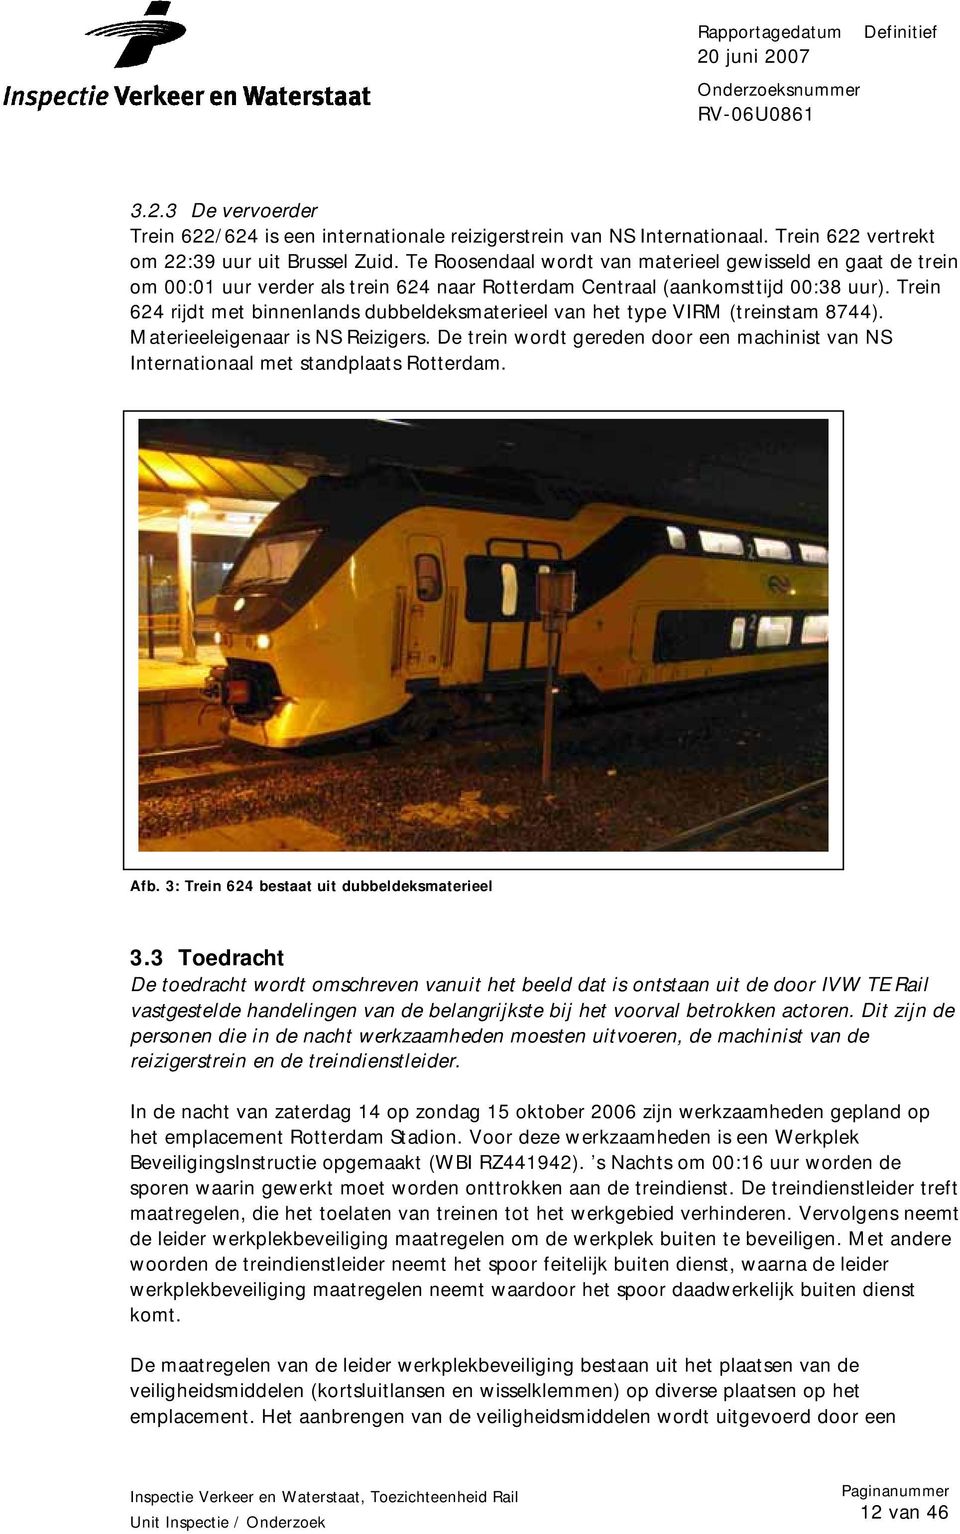 Trein 624 rijdt met binnenlands dubbeldeksmaterieel van het type VIRM (treinstam 8744). Materieeleigenaar is NS Reizigers.